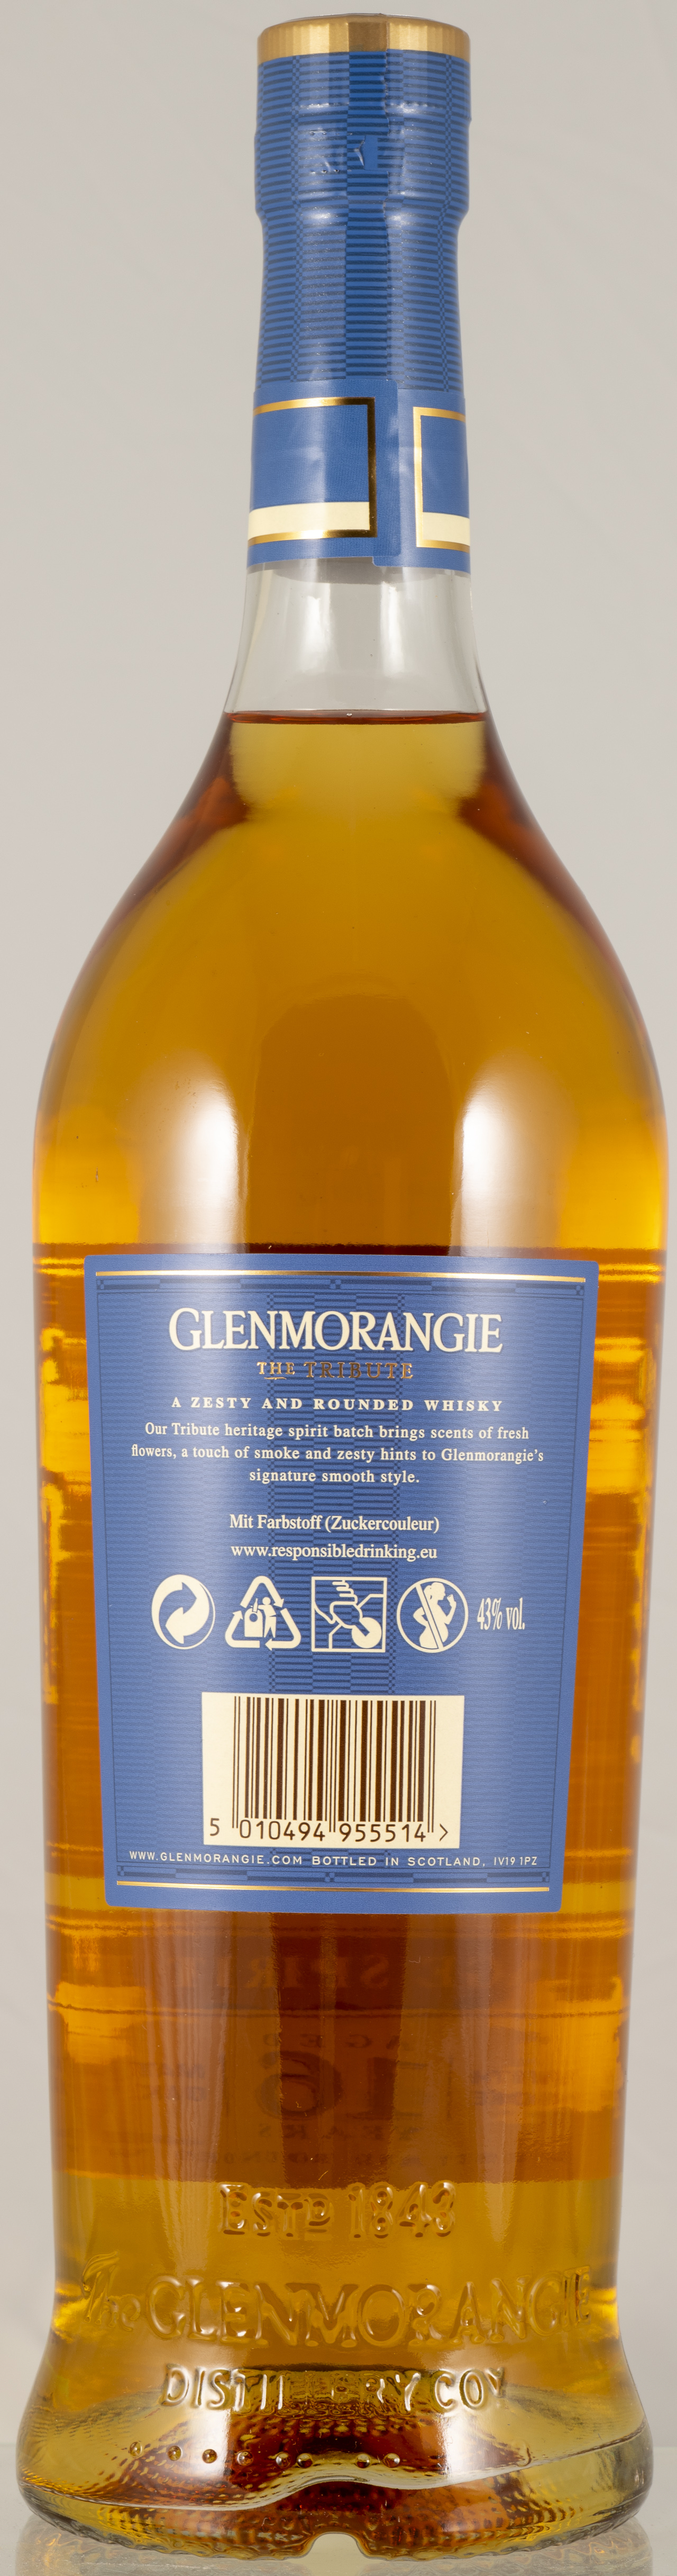 Billede: PHC_7070 - Glenmorangie The Tribute 16 - bottle back.jpg